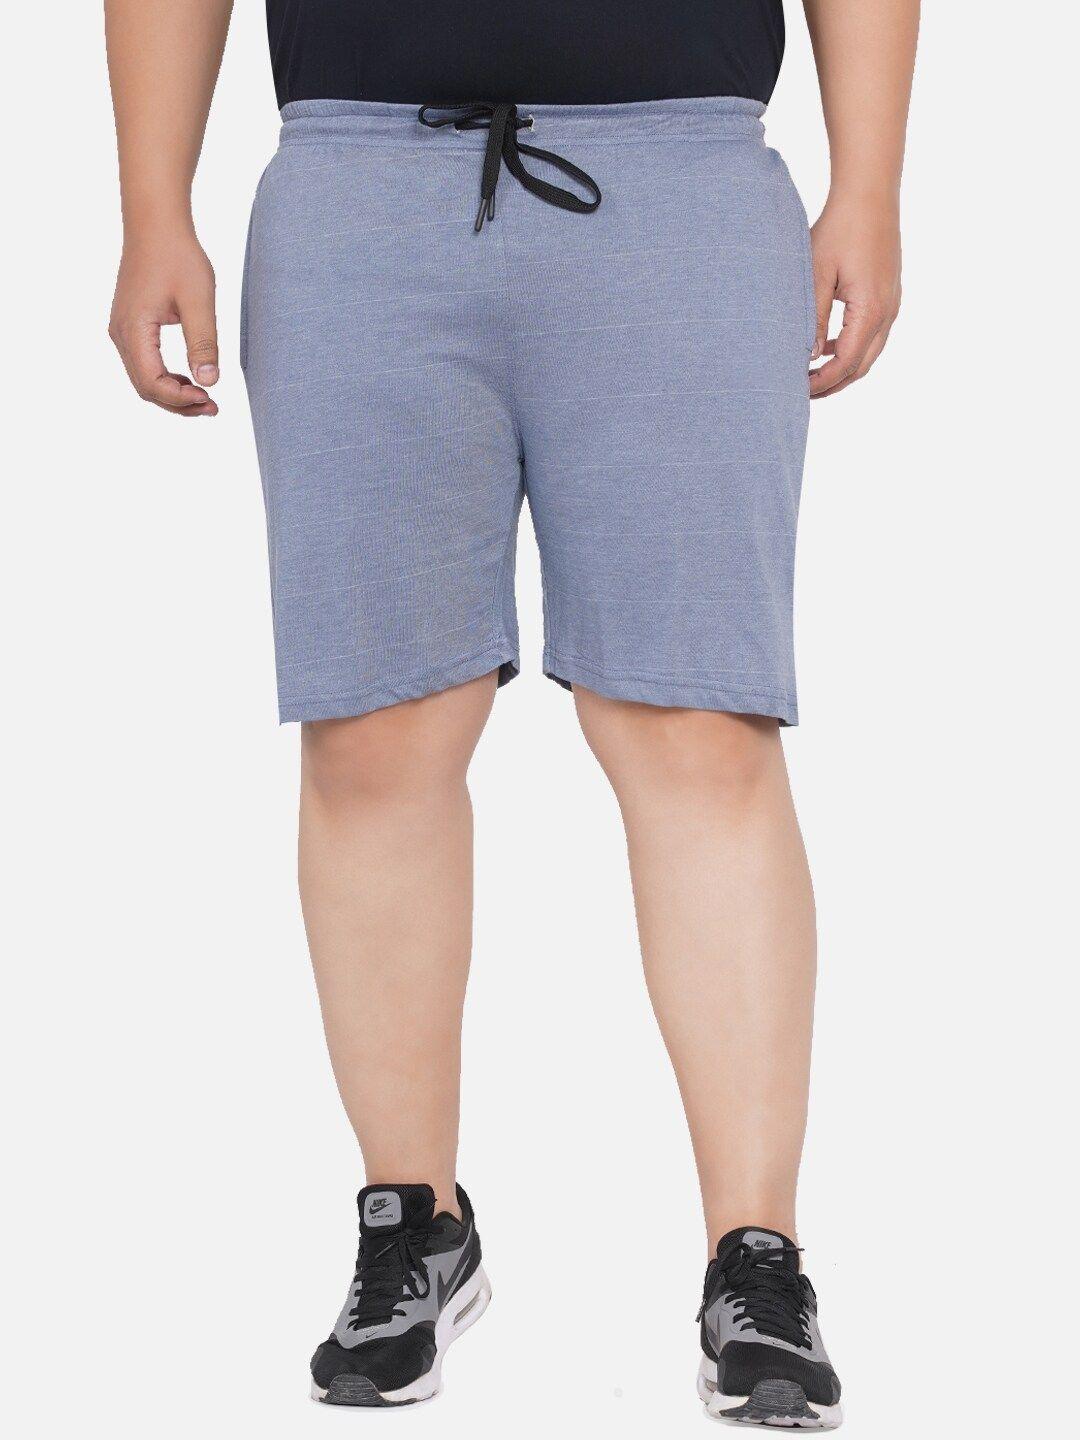 santonio men plus size pure cotton shorts